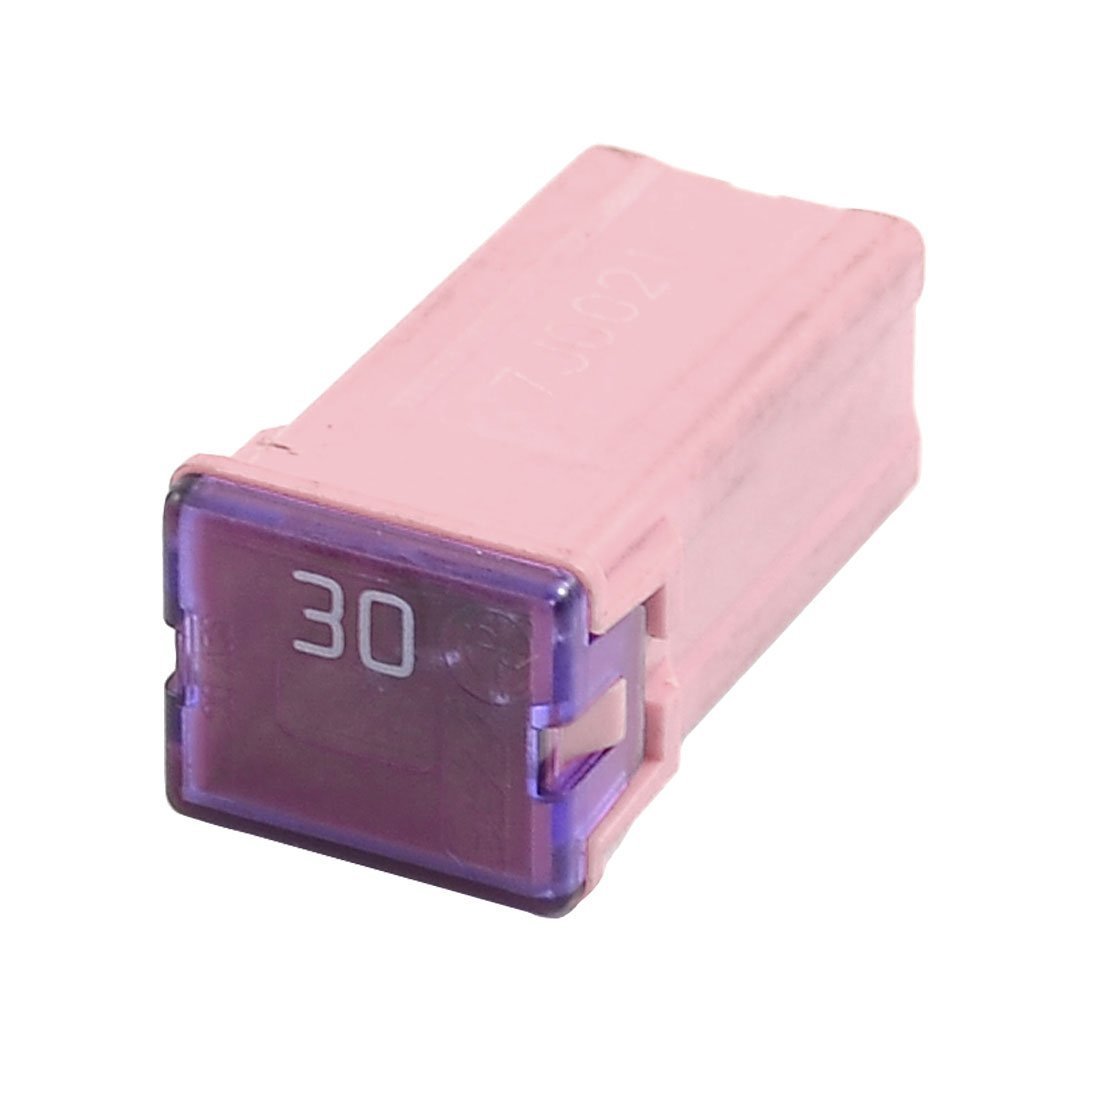 Предохранитель, MITSUBISHI, кассетный Micro мама (J - тип) 30А Розовый, MH056231.